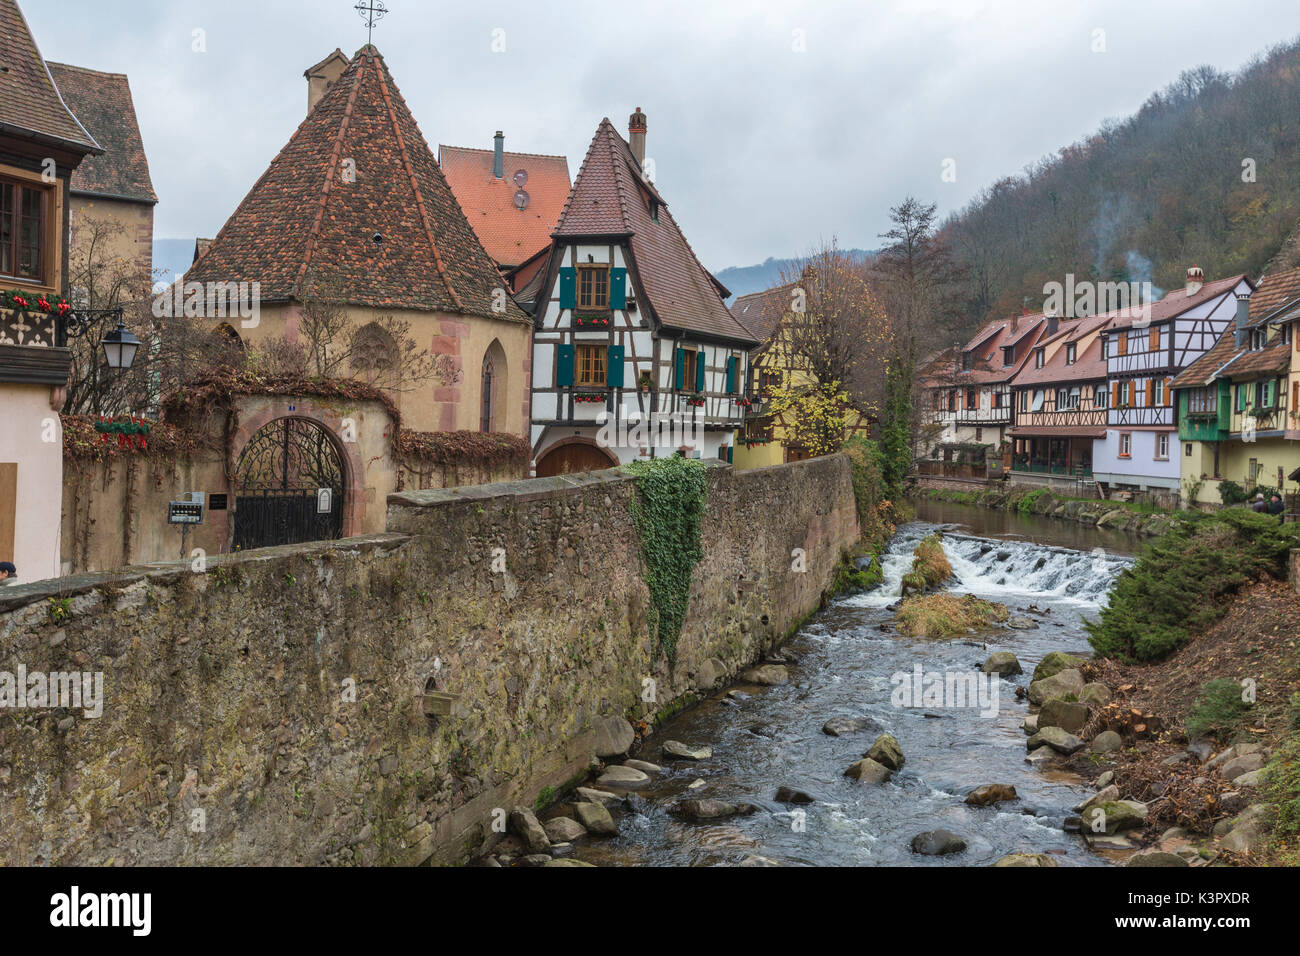 Arquitectura típica de la ciudad medieval y el puente sobre el río Weiss Kaysersberg departamento de Haut-Rhin Alsace Francia Europa Foto de stock